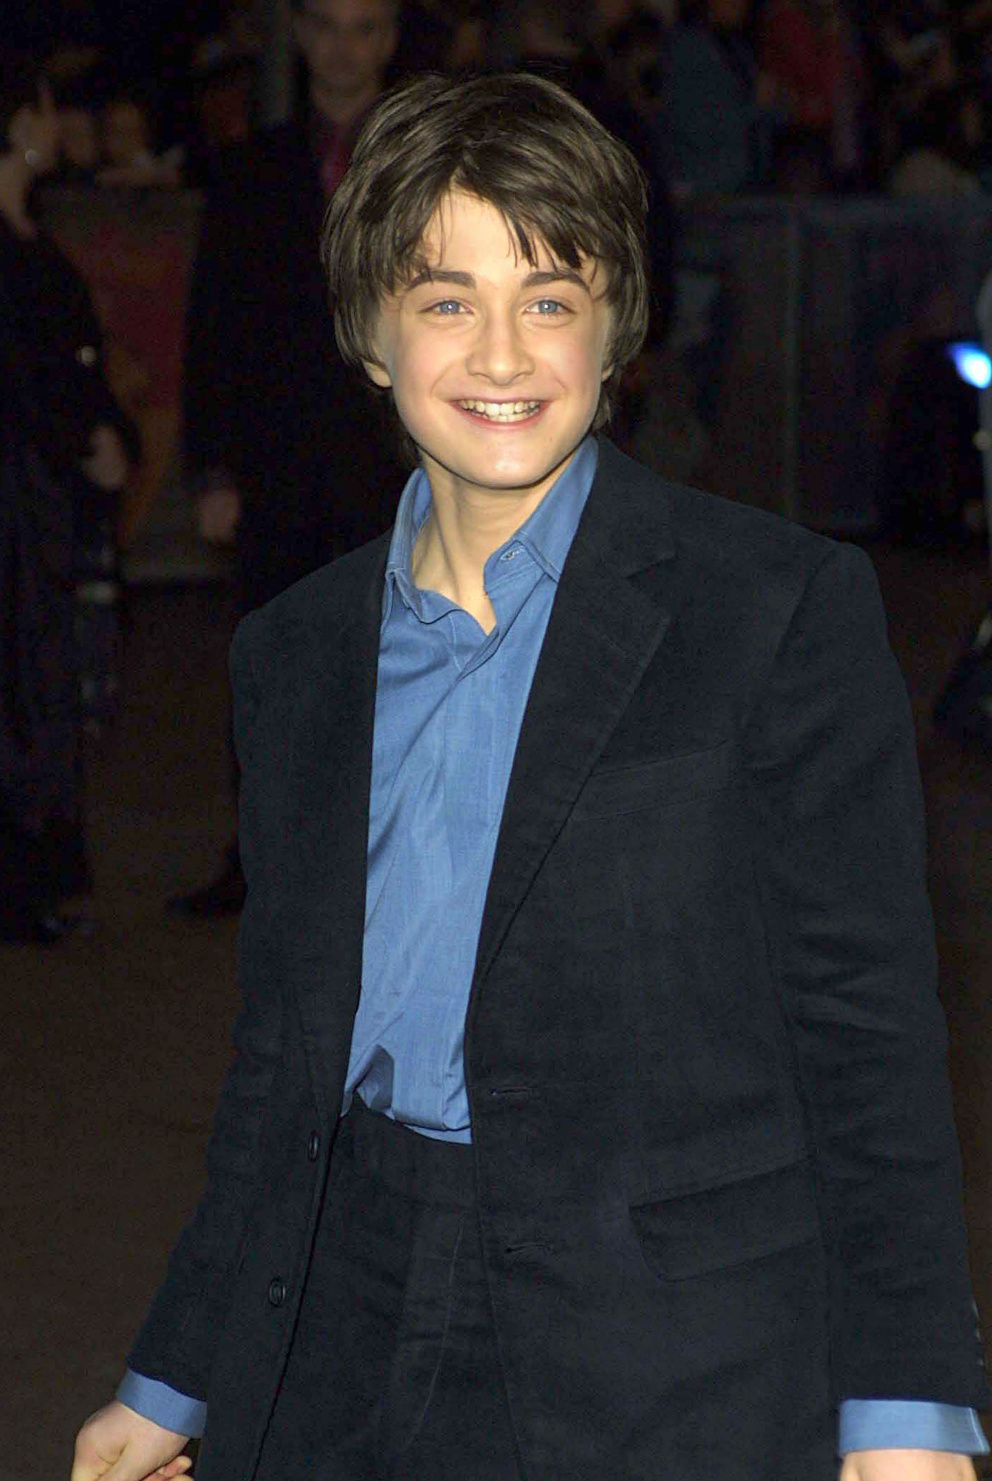 Daniel Radcliffe jako dítě

Daniel Radcliffe se poprvé objevil před kamerou ve 12 letech, když získal svou životní roli Harryho Pottera, v níž setrval až do dospělosti.
